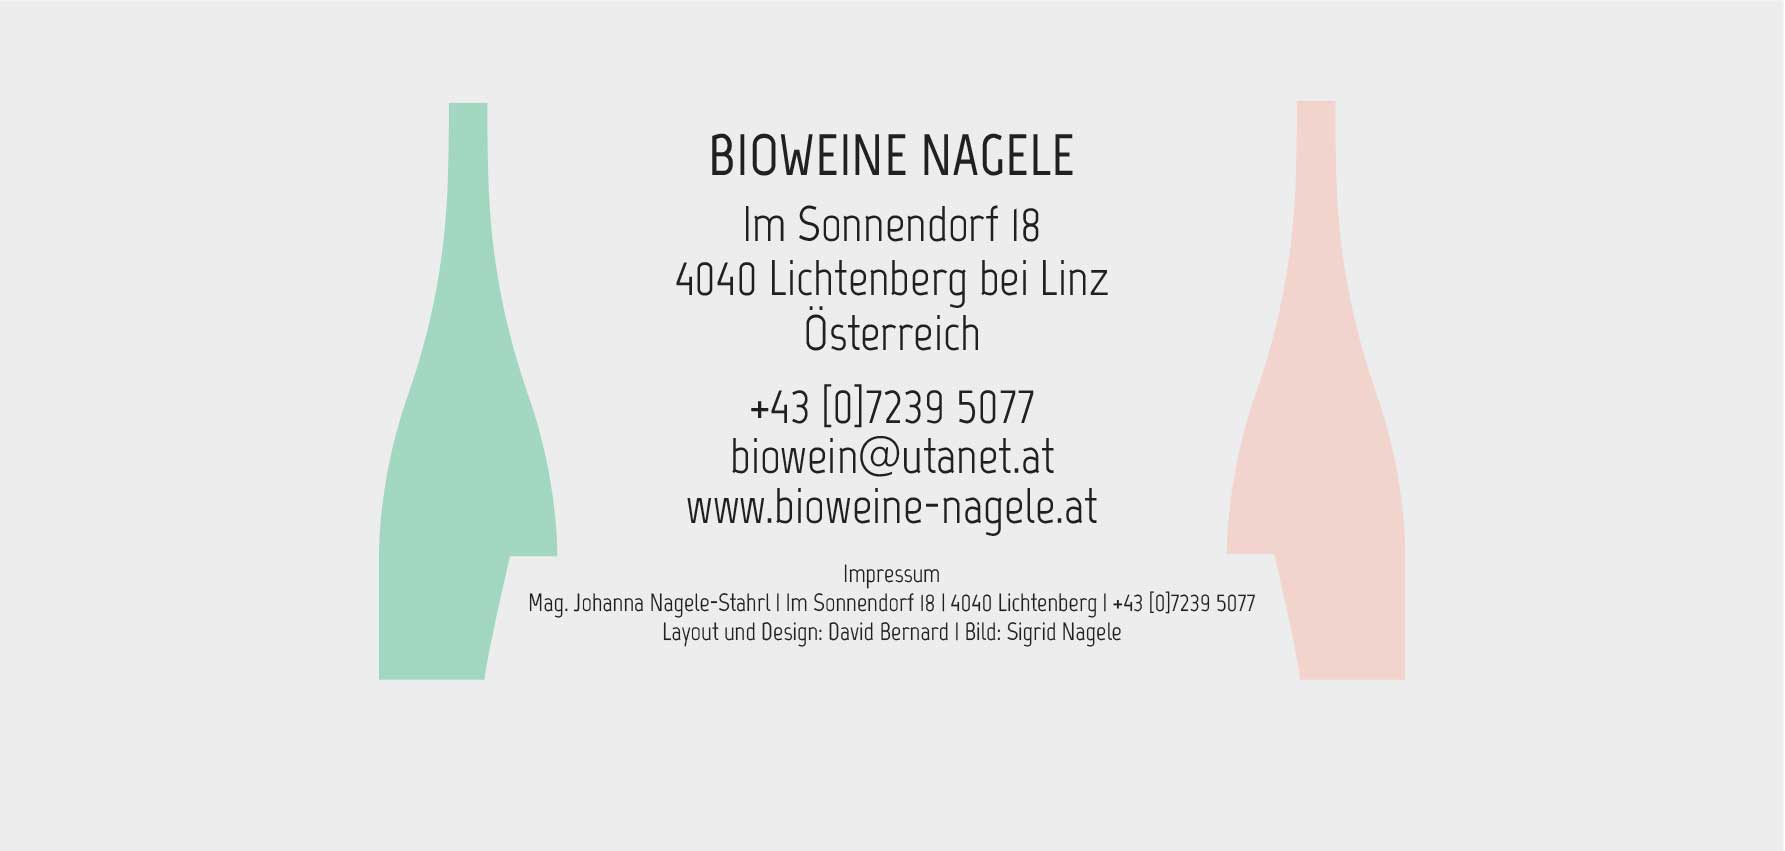 BIOWEINE NAGELE - Im Sonnendorf 18 4040 Lichtenberg bei Linz - +43(0)7239 5077 - Layout und Design: David Bernard - Bild: Sigrid Nagele